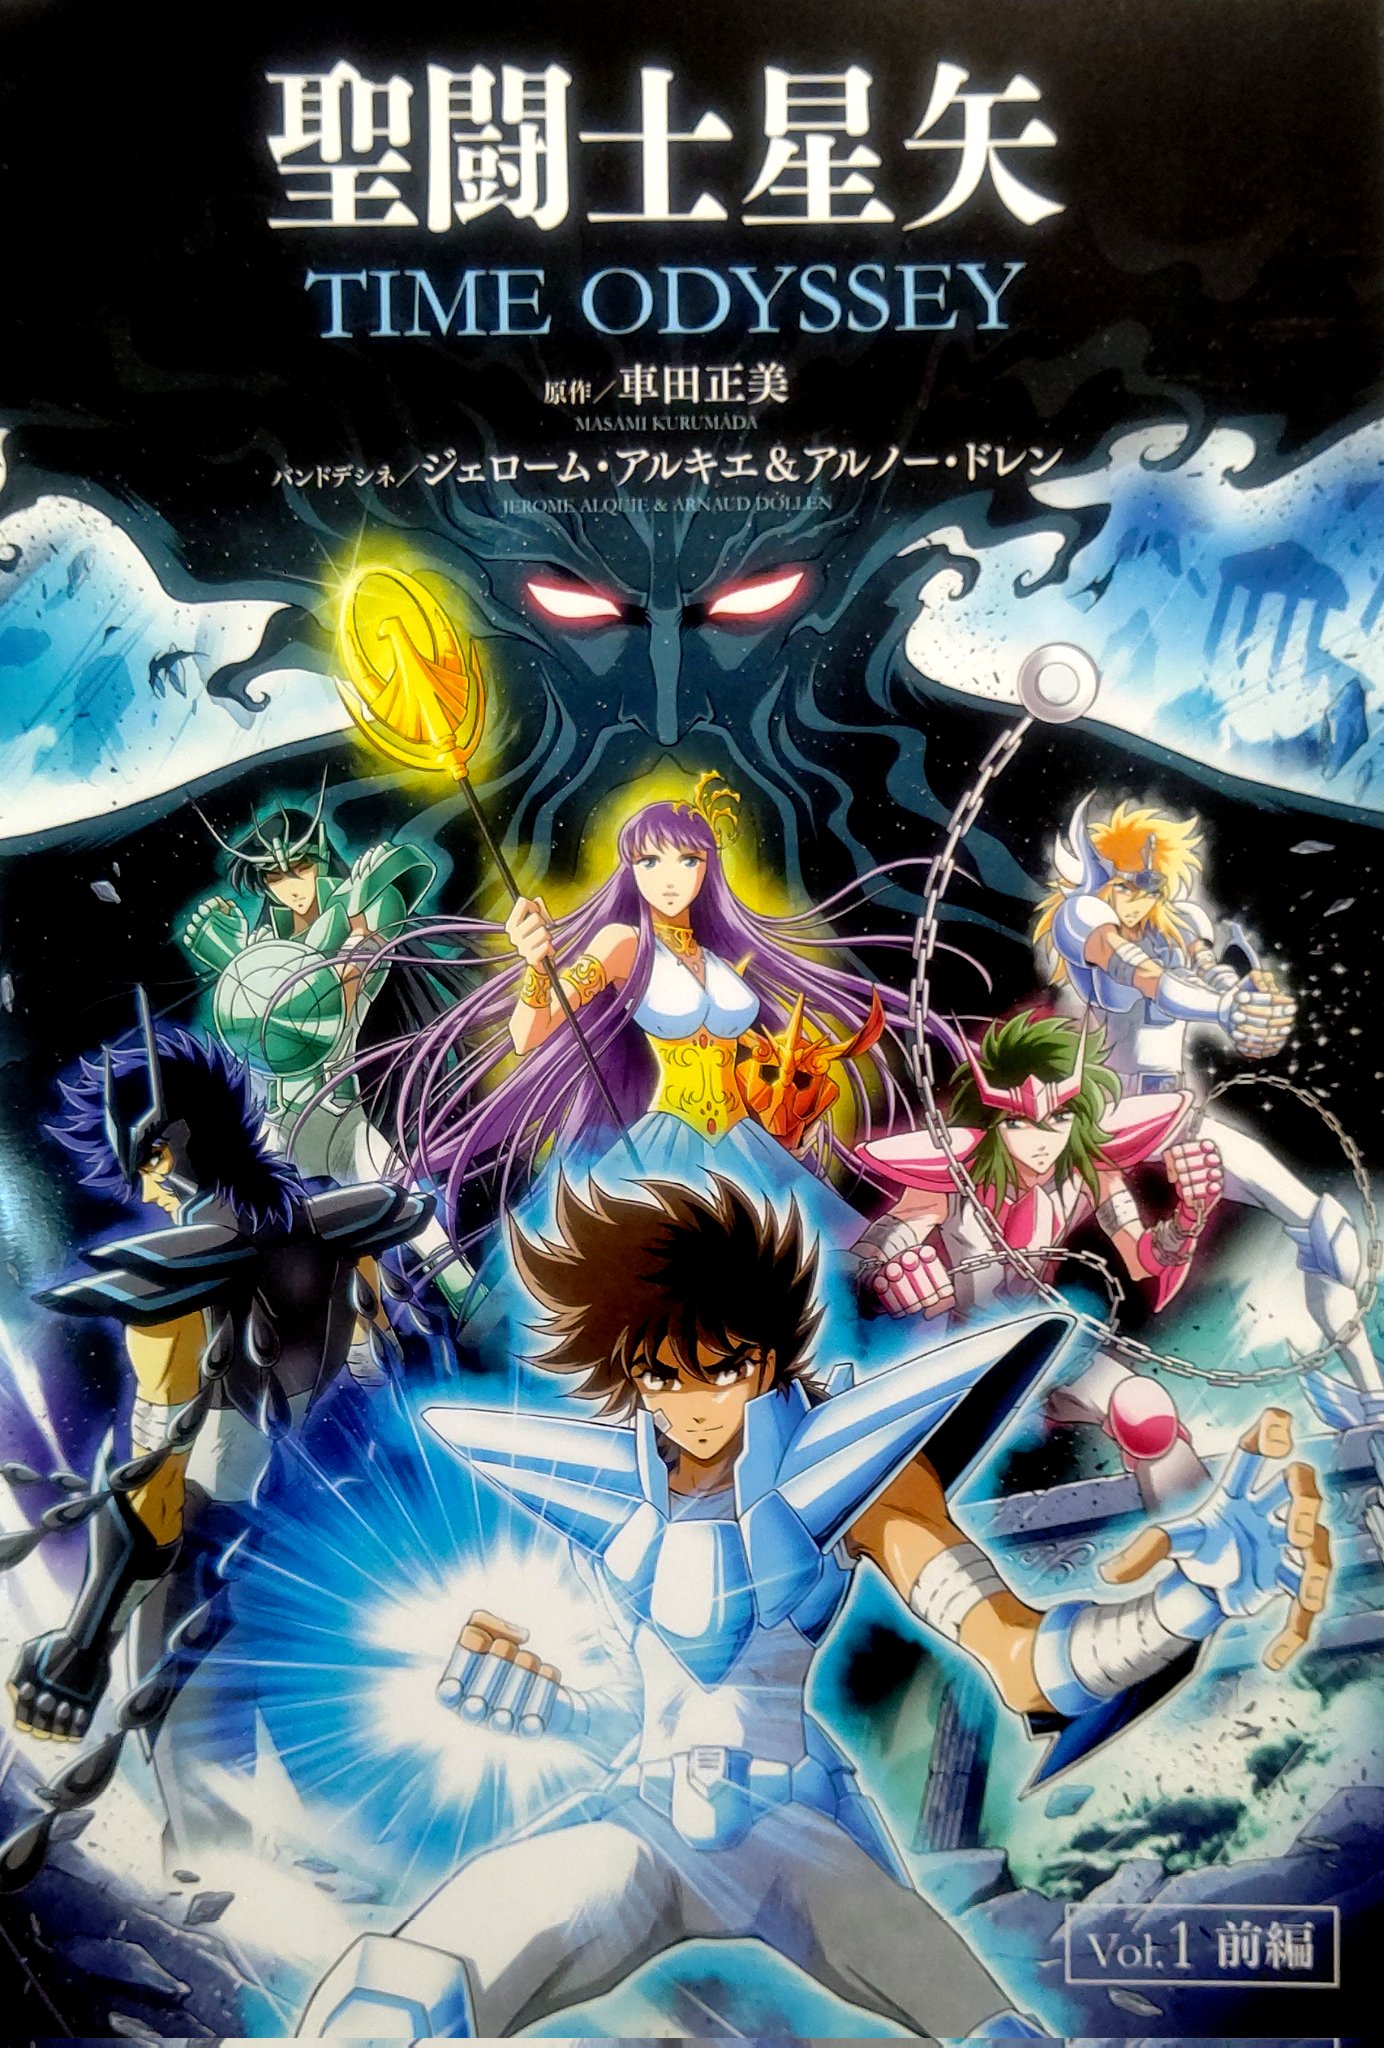 Os Cavaleiros do Zodíaco Ômega - Página 1 na Tokyo 3, informações de  Animes, Mangás, Games, Quadrinhos, HQ e Cinema